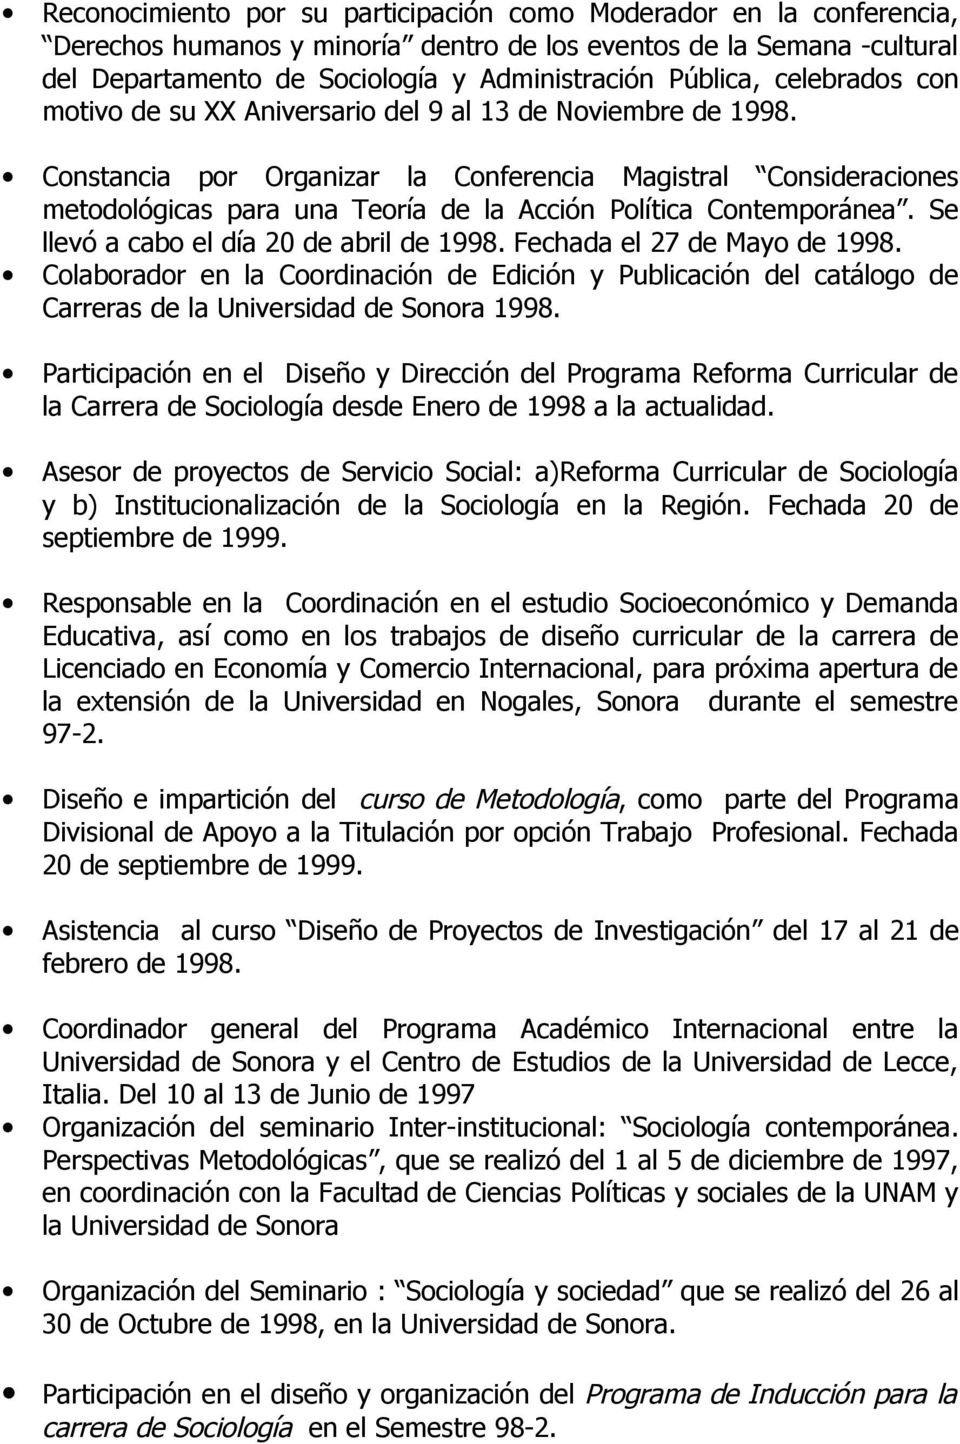 Constancia por Organizar la Conferencia Magistral Consideraciones metodológicas para una Teoría de la Acción Política Contemporánea. Se llevó a cabo el día 20 de abril de 1998.